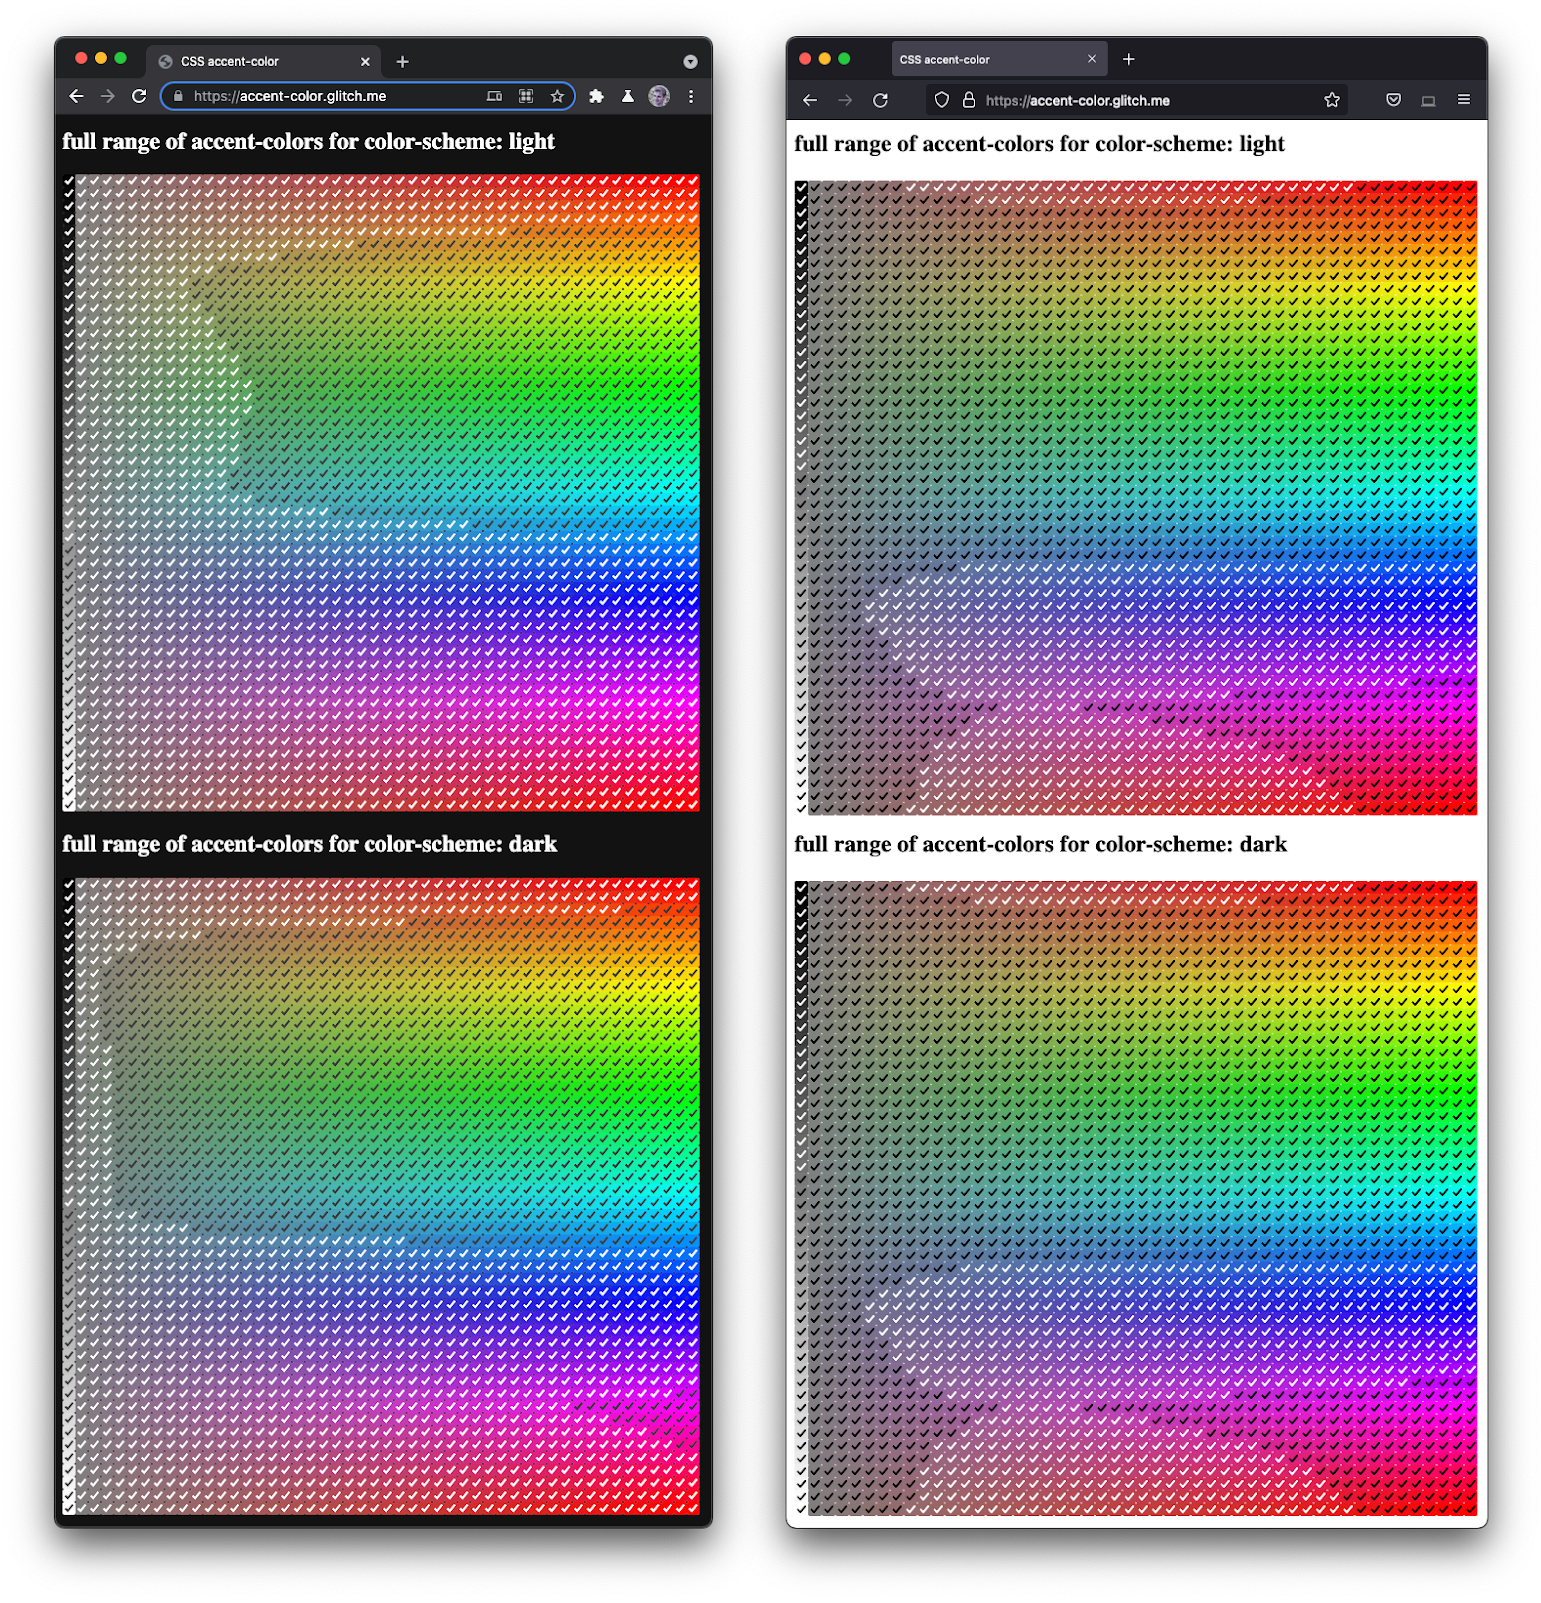 Screenshot Firefox dan Chromium berdampingan, yang merender spektrum penuh kotak centang dalam berbagai corak warna dan kegelapan.